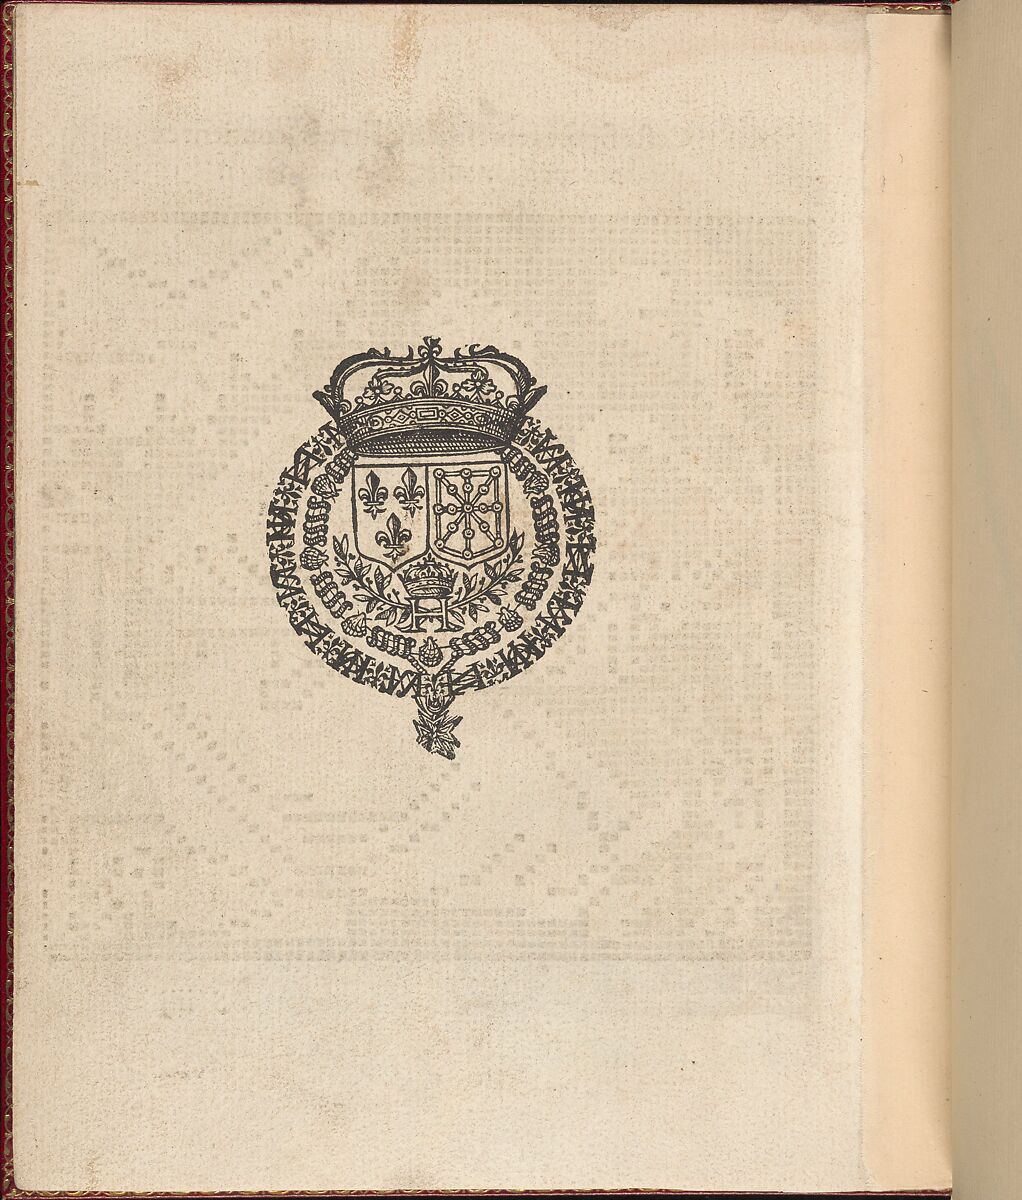 Les Singuliers et Nouveaux Portraicts... page 72 (verso), Federico de Vinciolo (Italian, active Paris, ca. 1587–99), Woodcut 